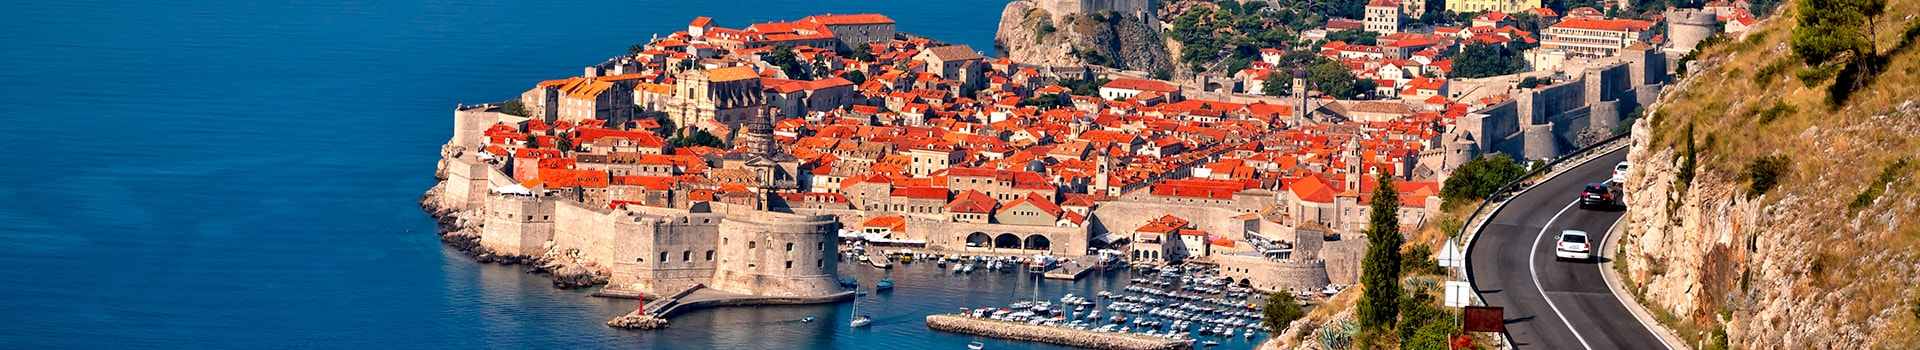 Alicante - Dubrovnik